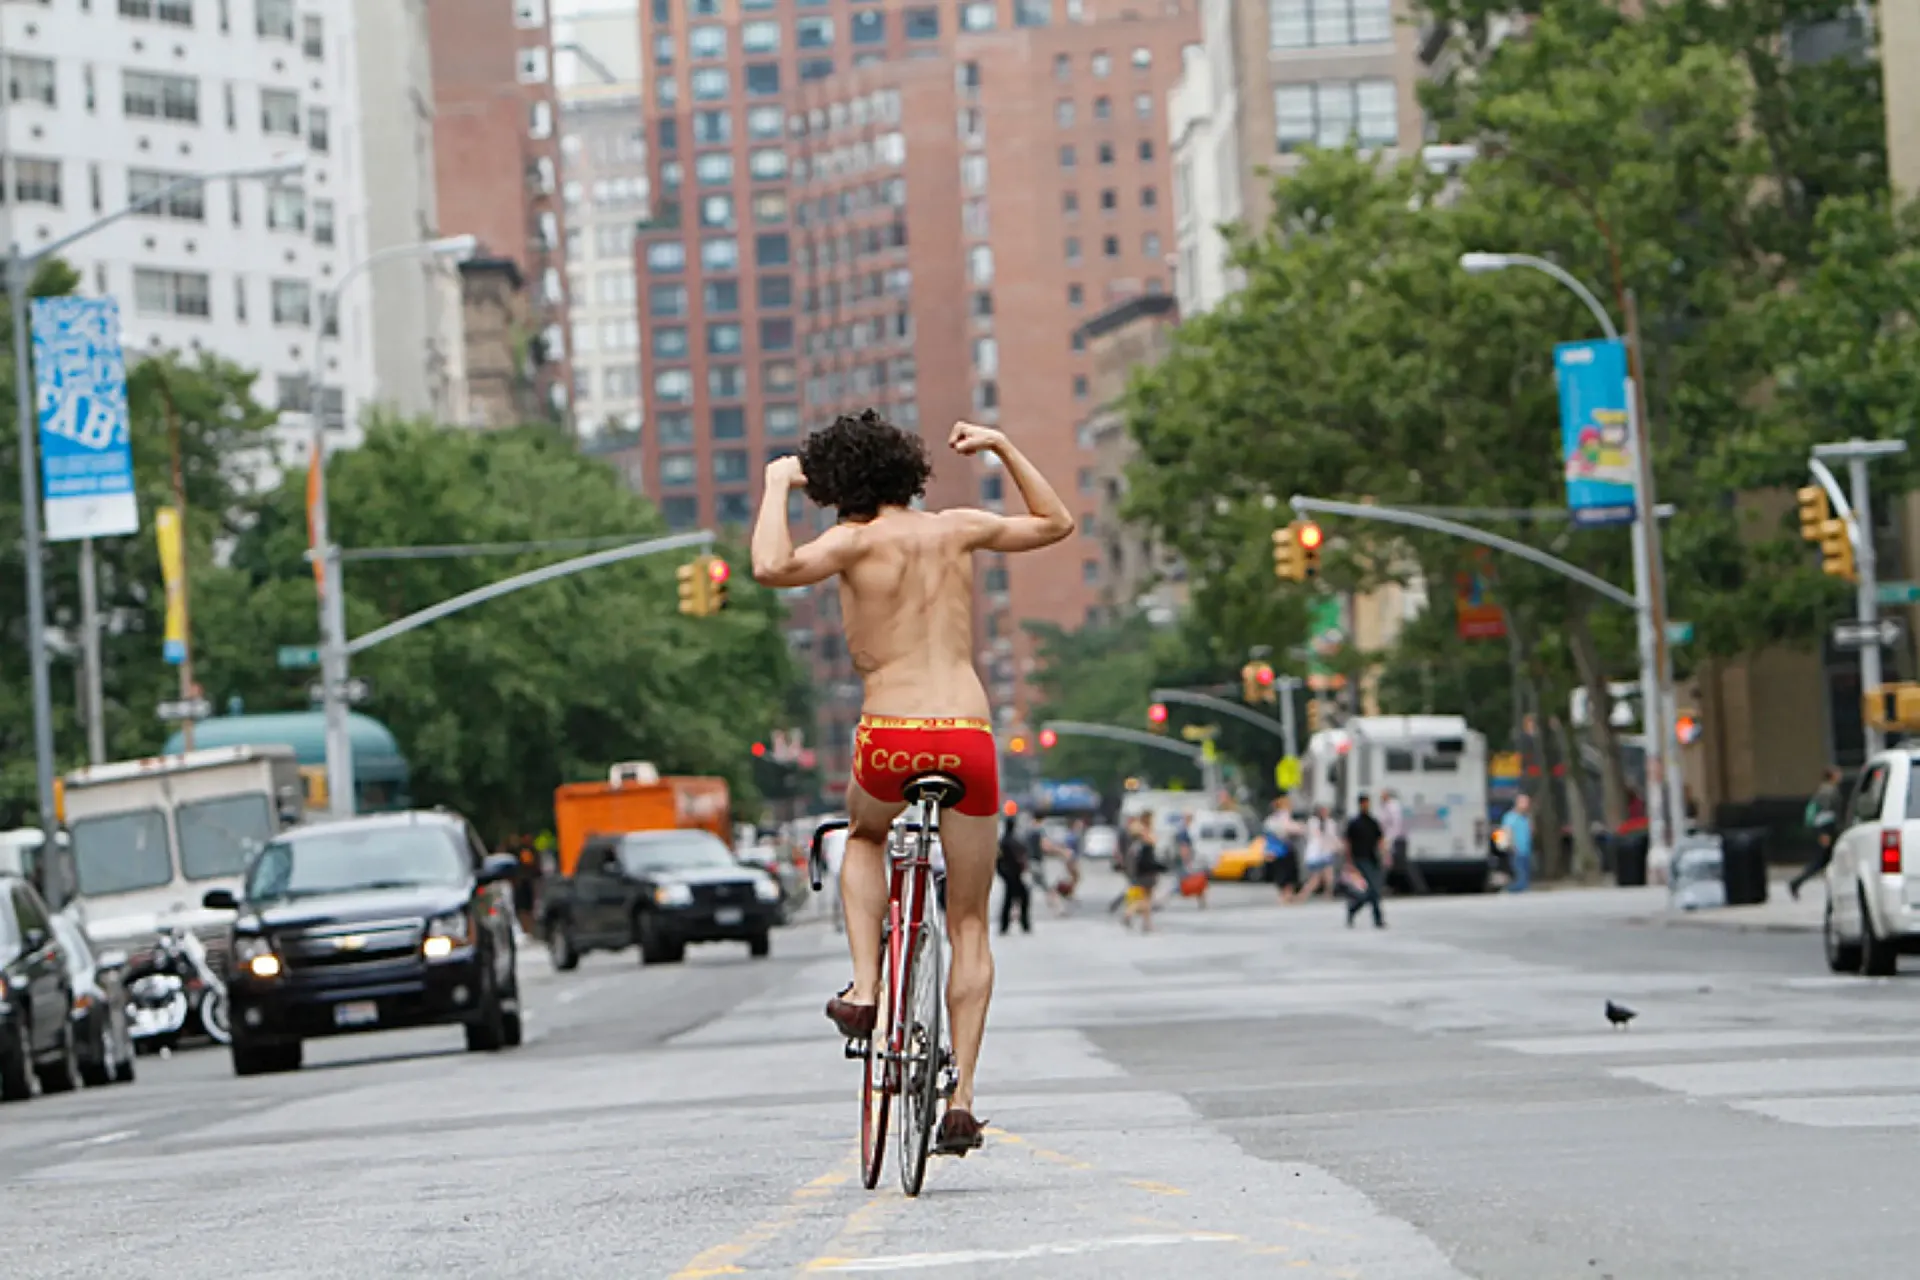 Poéticas, realistas o, incluso, cómicas: Fleming mostraba distintas realidades del ciclismo urbano en Nueva York.